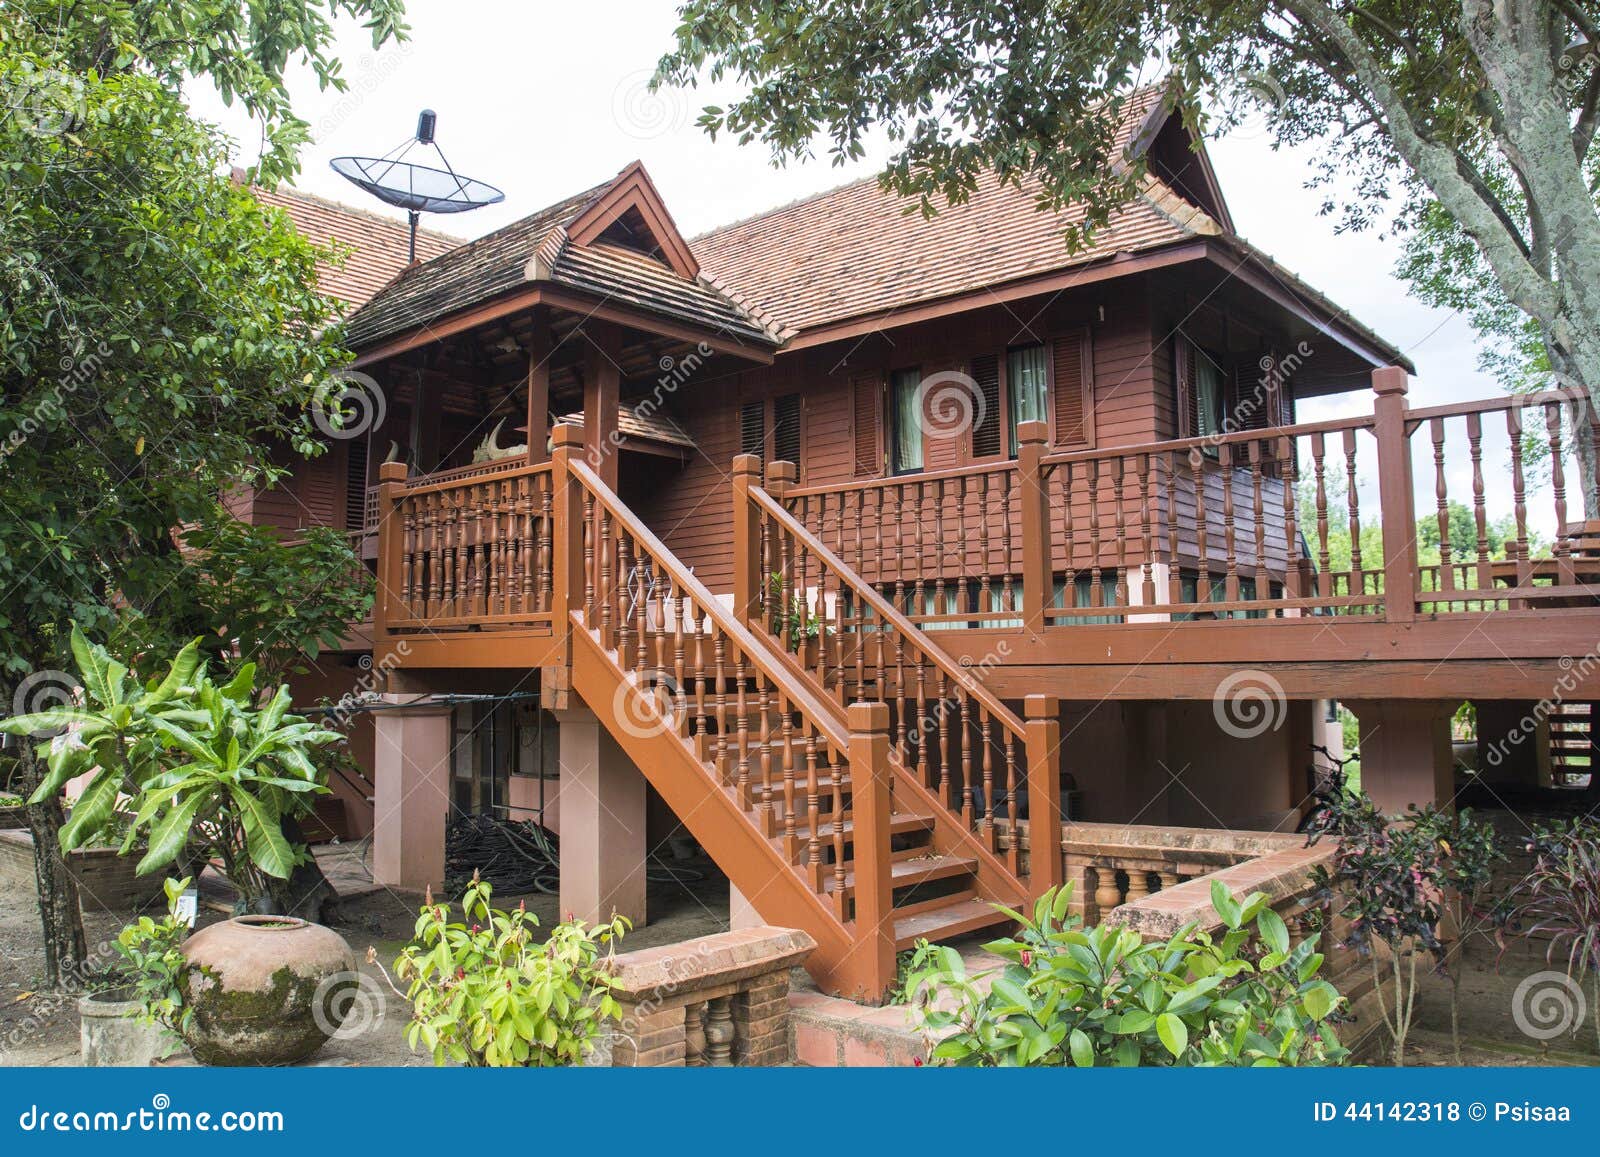 泰国传统木房子 库存图片. 图片 包括有 系列, 背包, 木头, 房子, 模式, 小船, 绿色, 布琼布拉 - 61862579